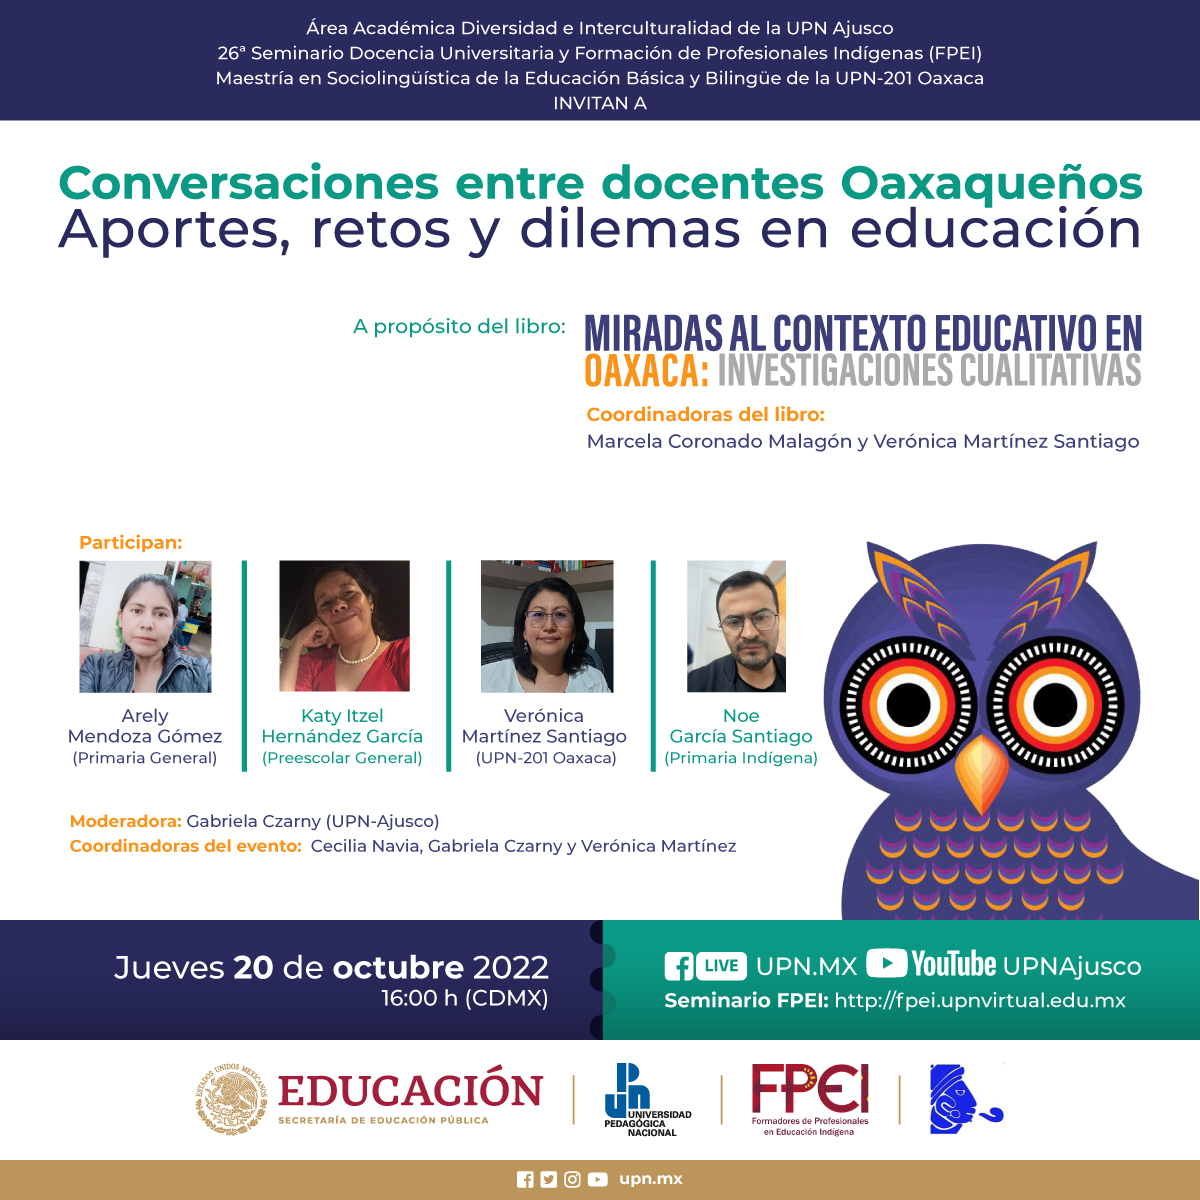 Miradas al contexto educativo en Oaxaca. Investigaciones cualitativas